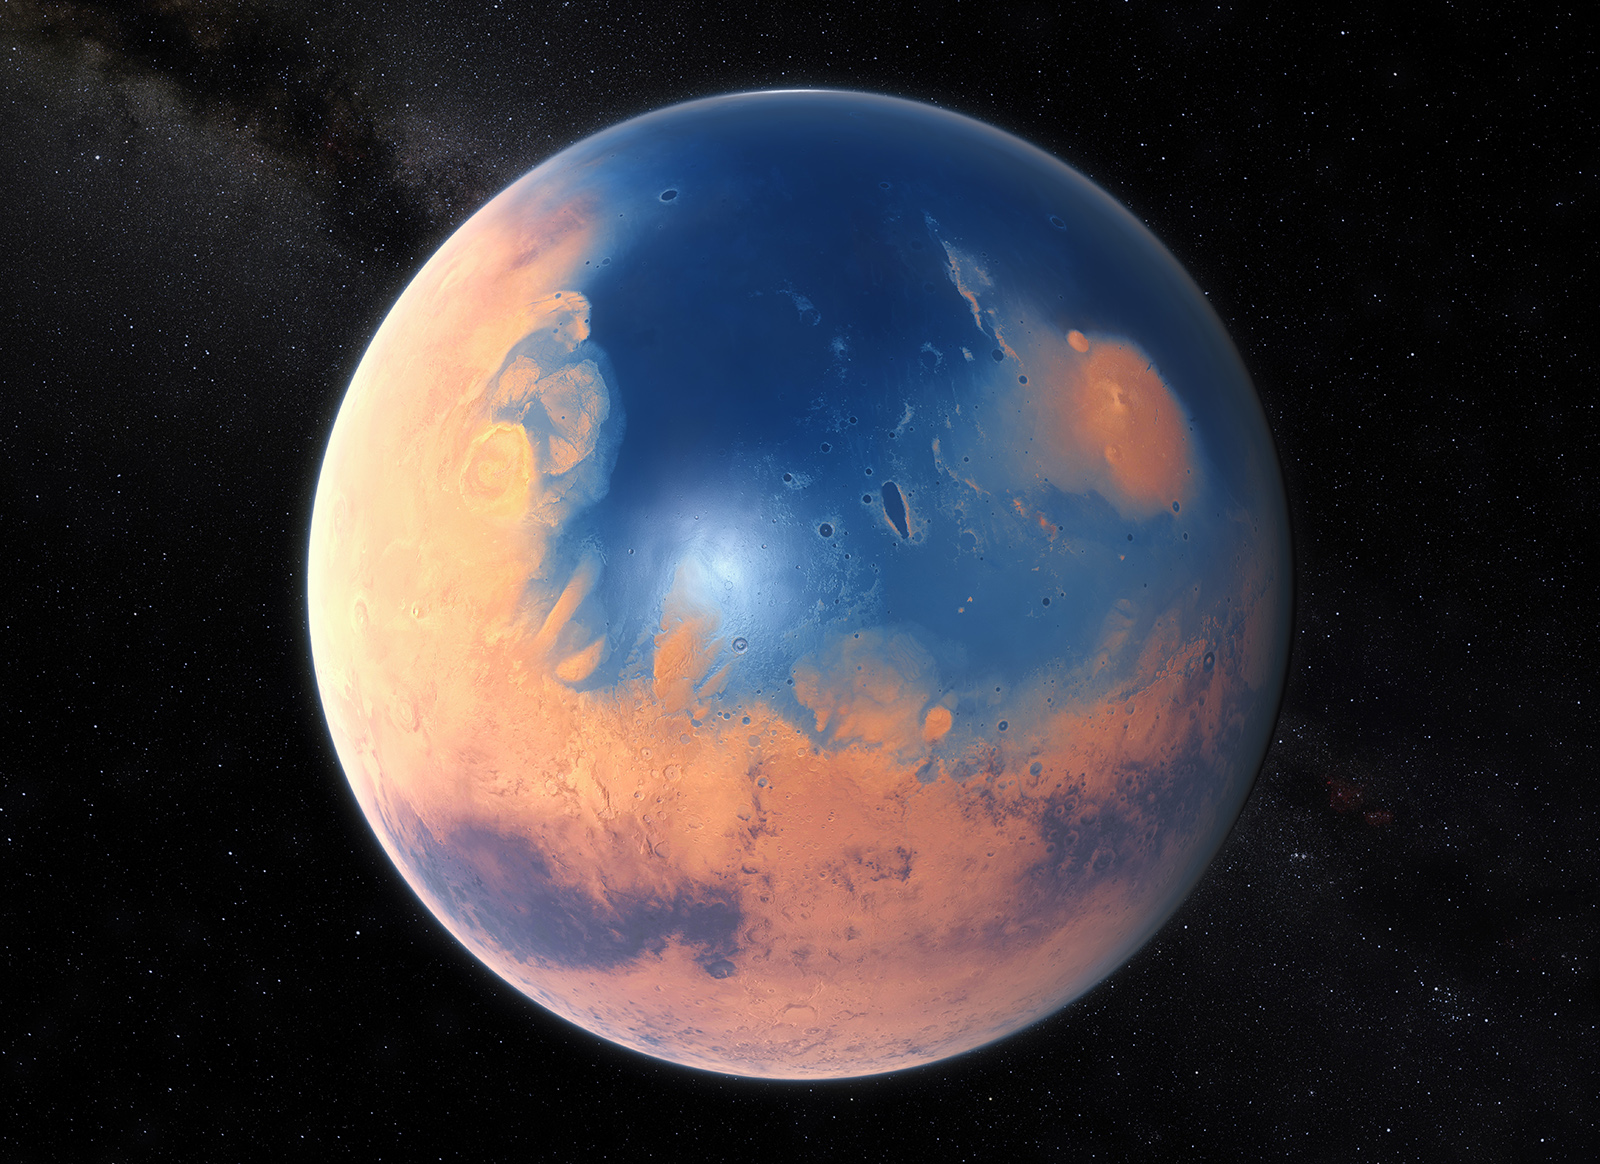  Художнє зображення Марса 4 мільярди років тому. Credit: ESO